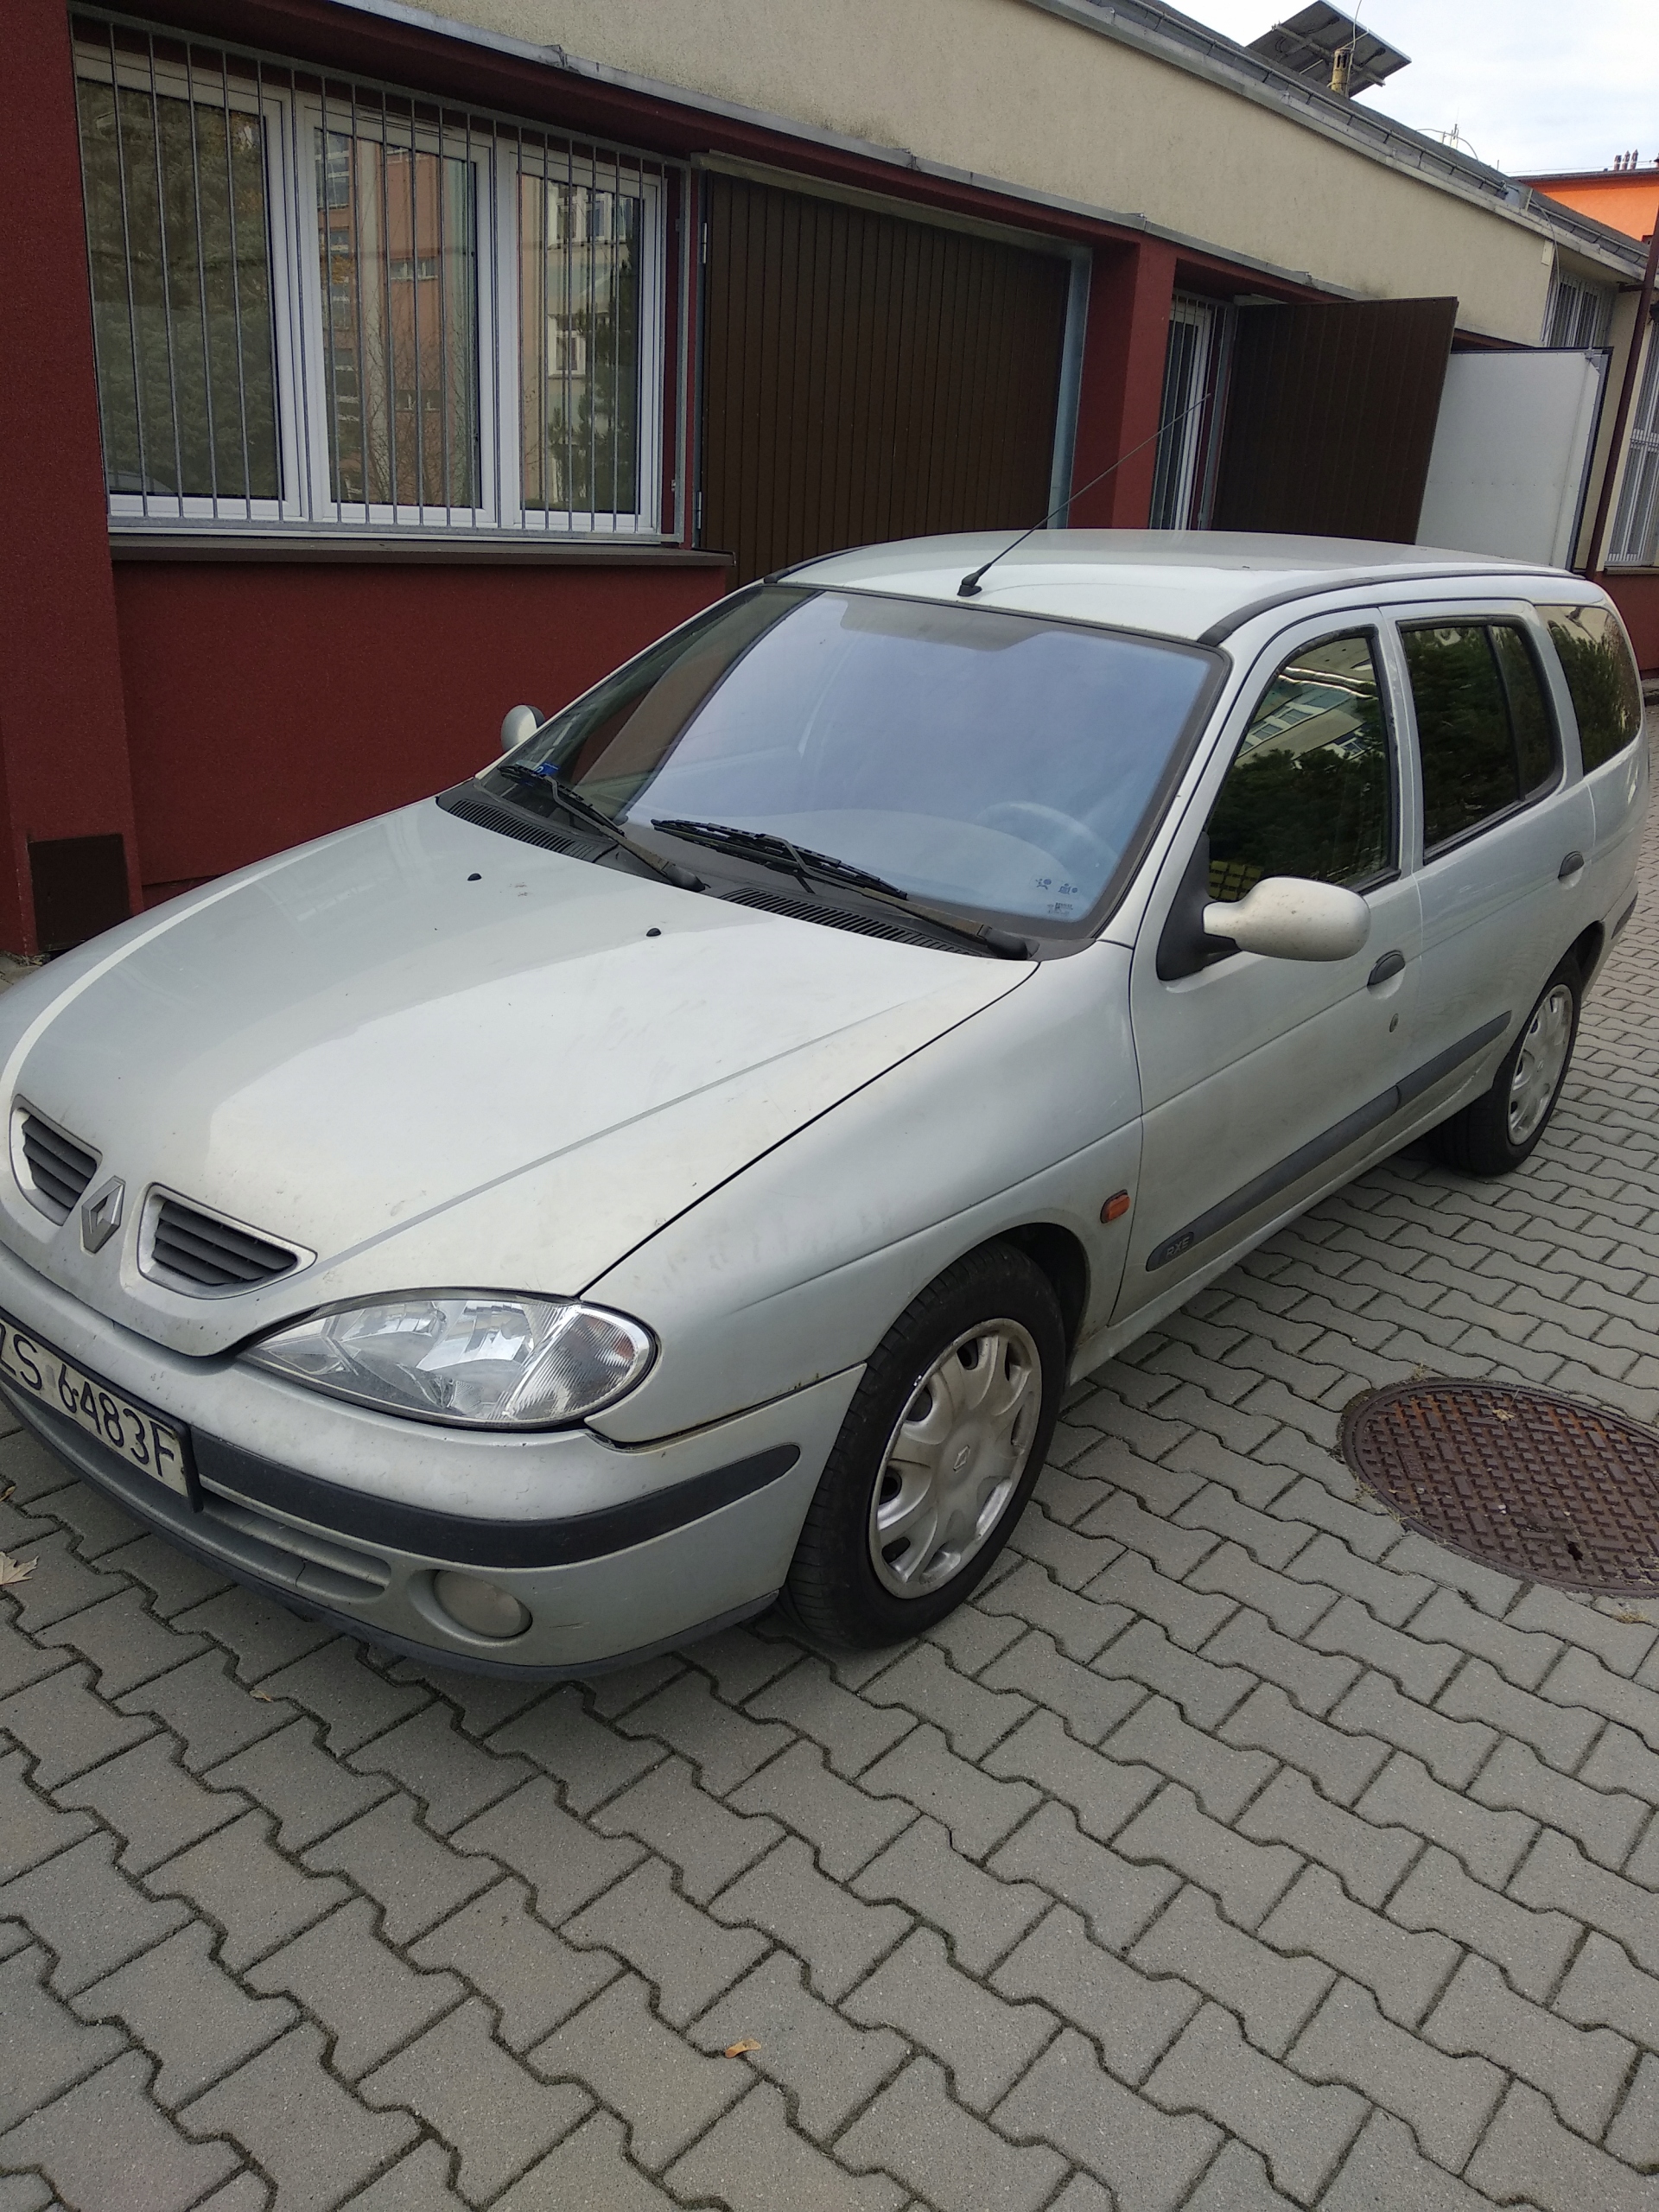 Renault Megane 1,9 dti Kombi 2000r 7681251200